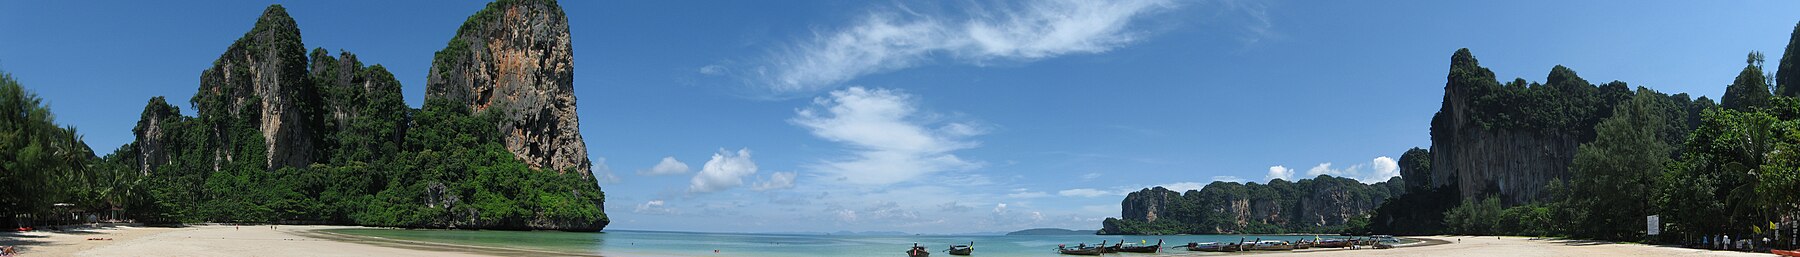 Rai Leh beach i södra Thailand